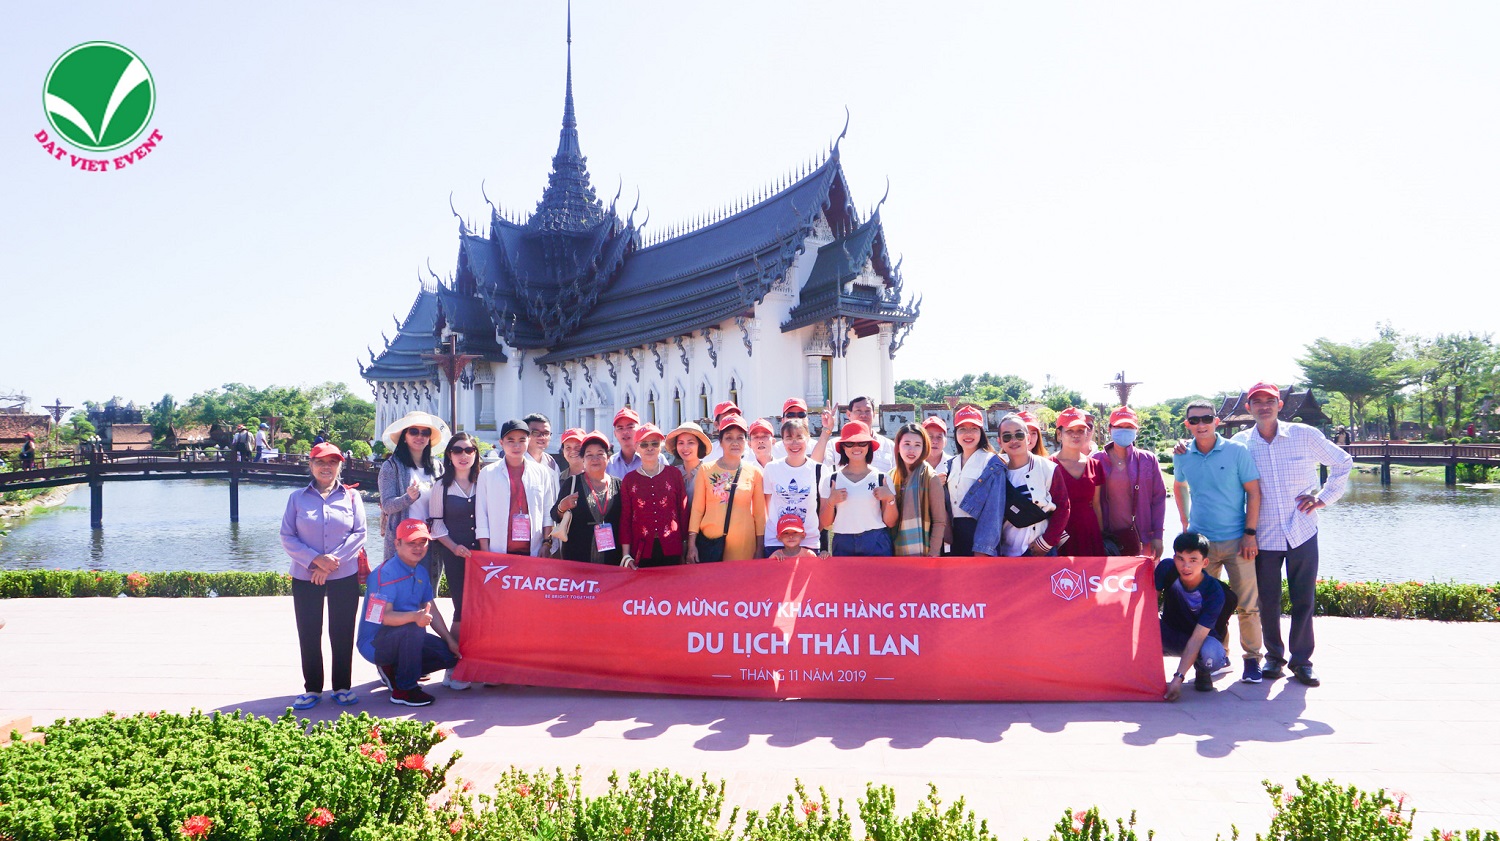 Đất Việt Event tổ chức thành công tour du lịch sự kiện cho đoàn 800 khách tại Thái Lan - ảnh 2